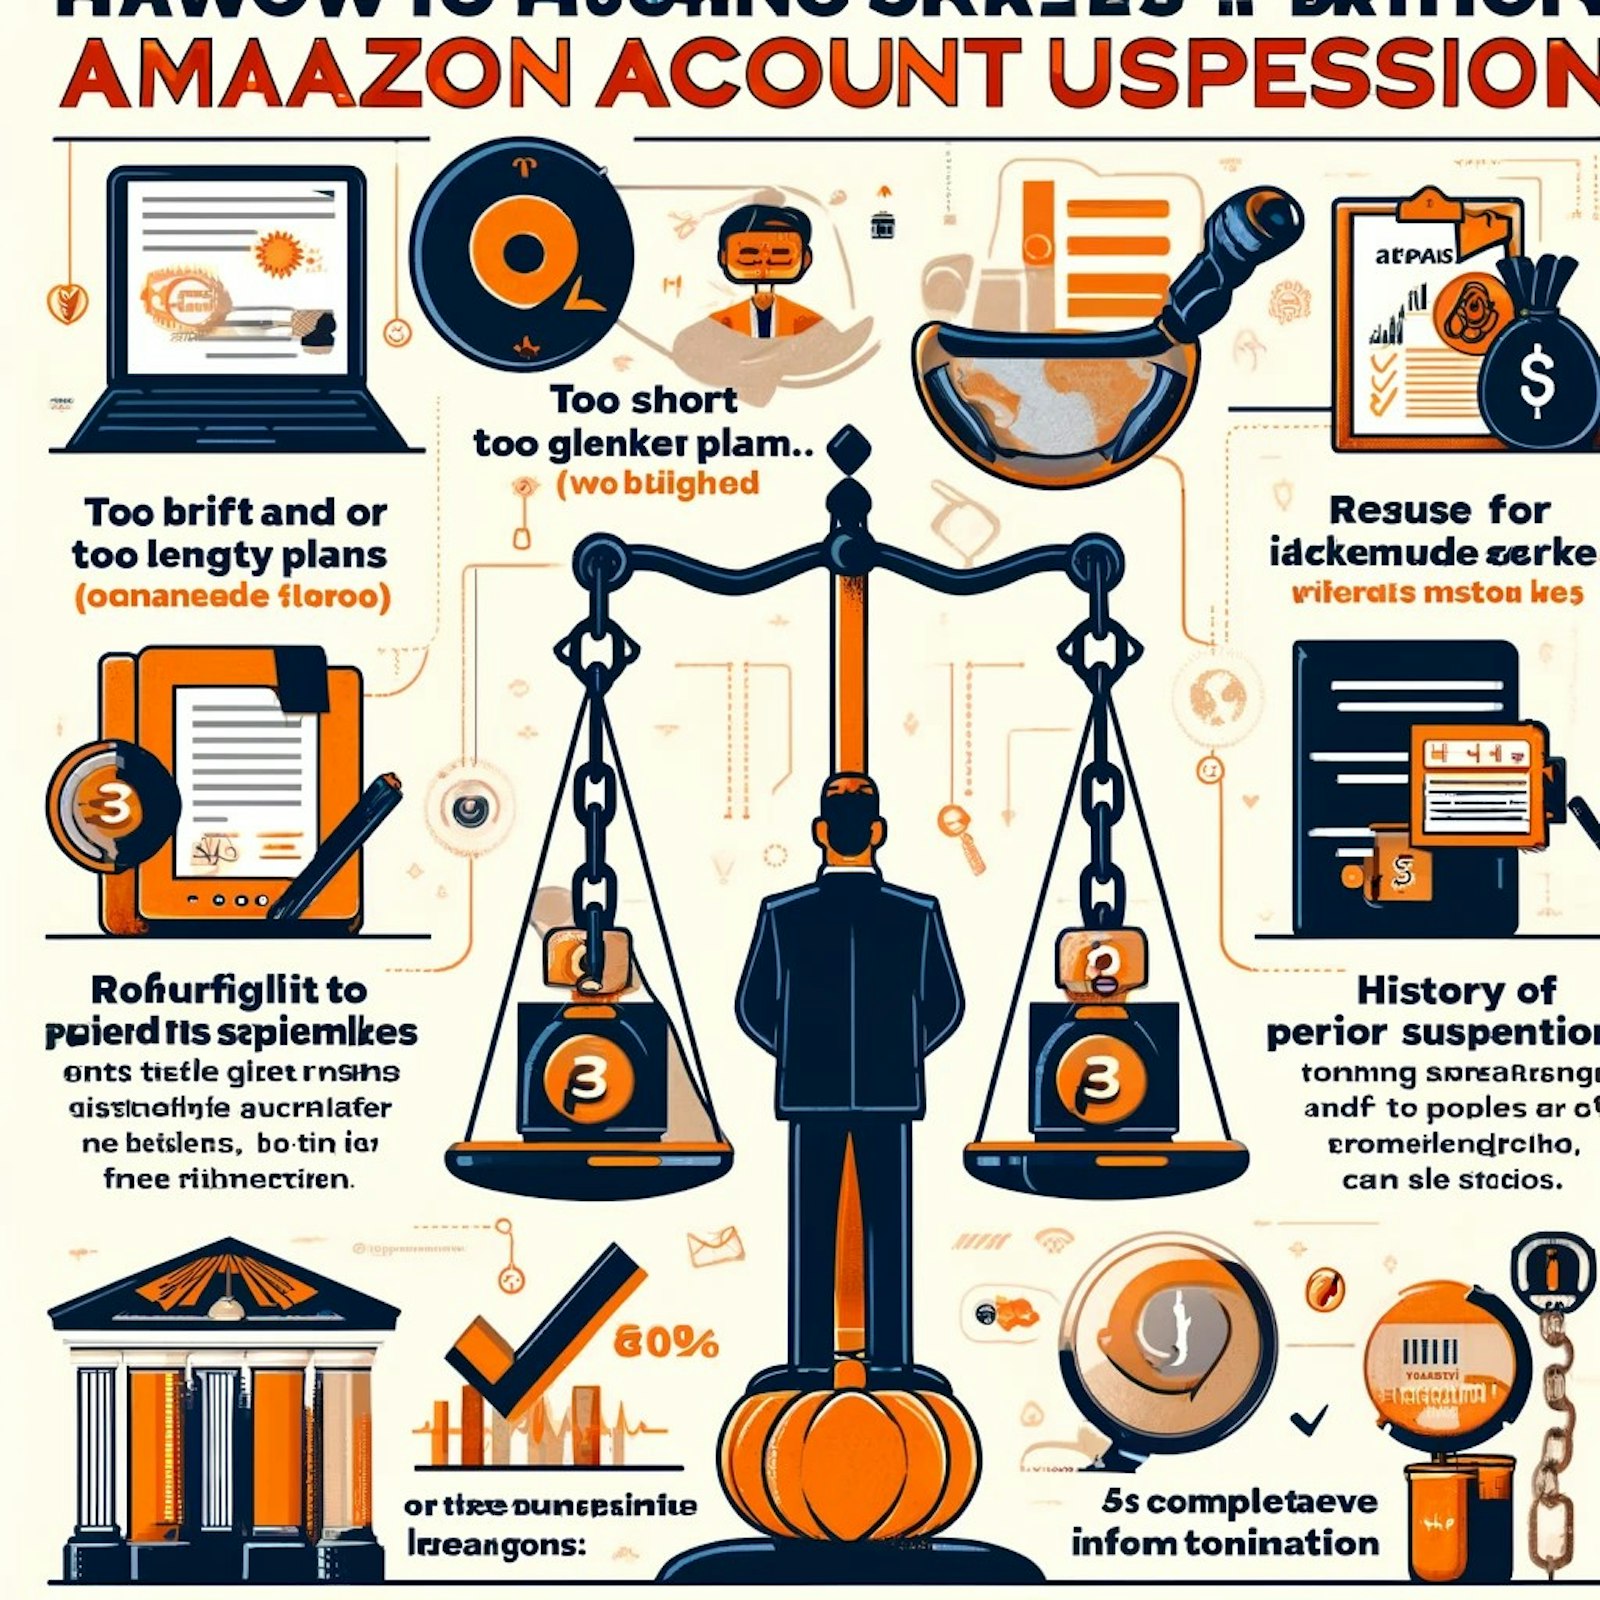 Image illustrant les étapes pour créer un plan d'actions efficace visant à résoudre les suspensions de comptes Amazon, avec des conseils pour communiquer avec les équipes d'Amazon.